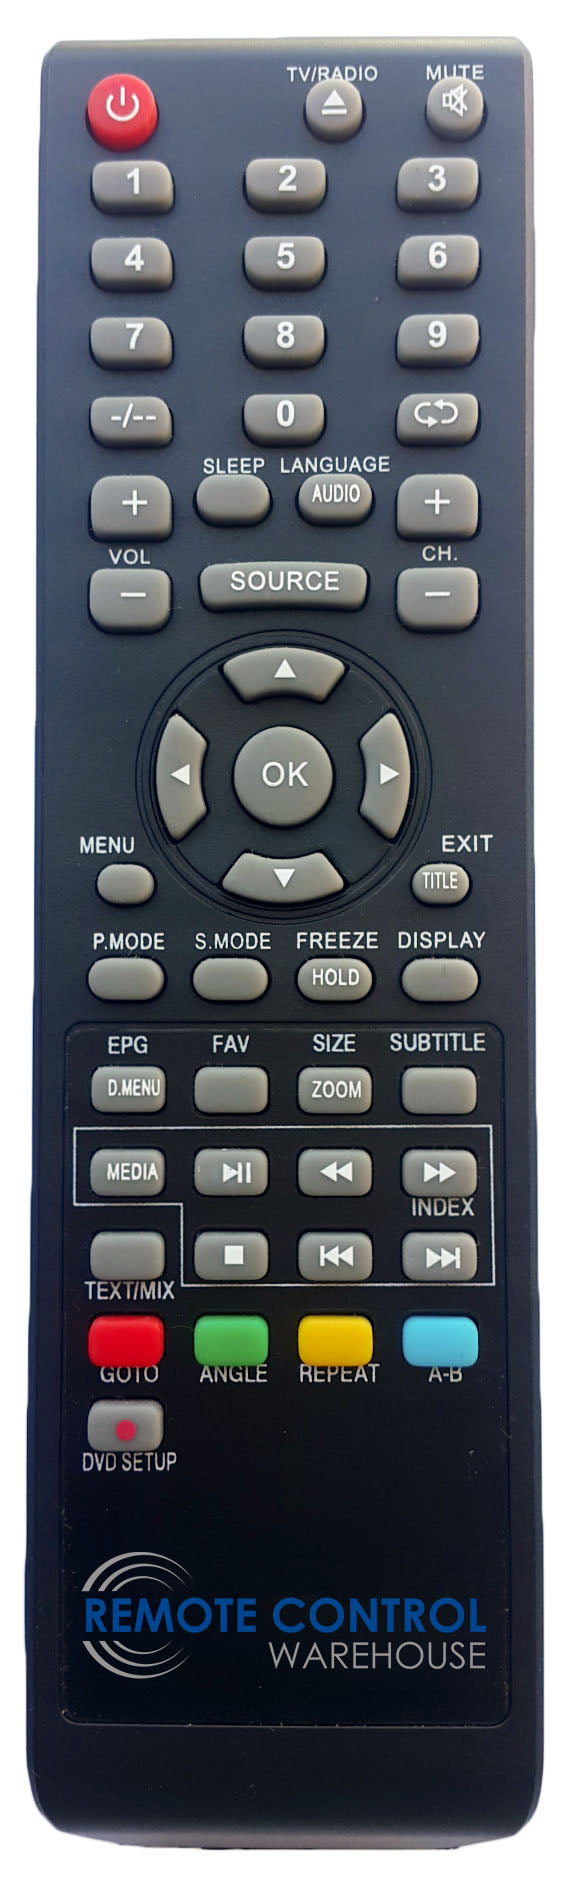 AKAI REPLACEMENT REMOTE CONTROL - AK4015FHDC AK-4015FHDC LED TV - Remote Control Warehouse